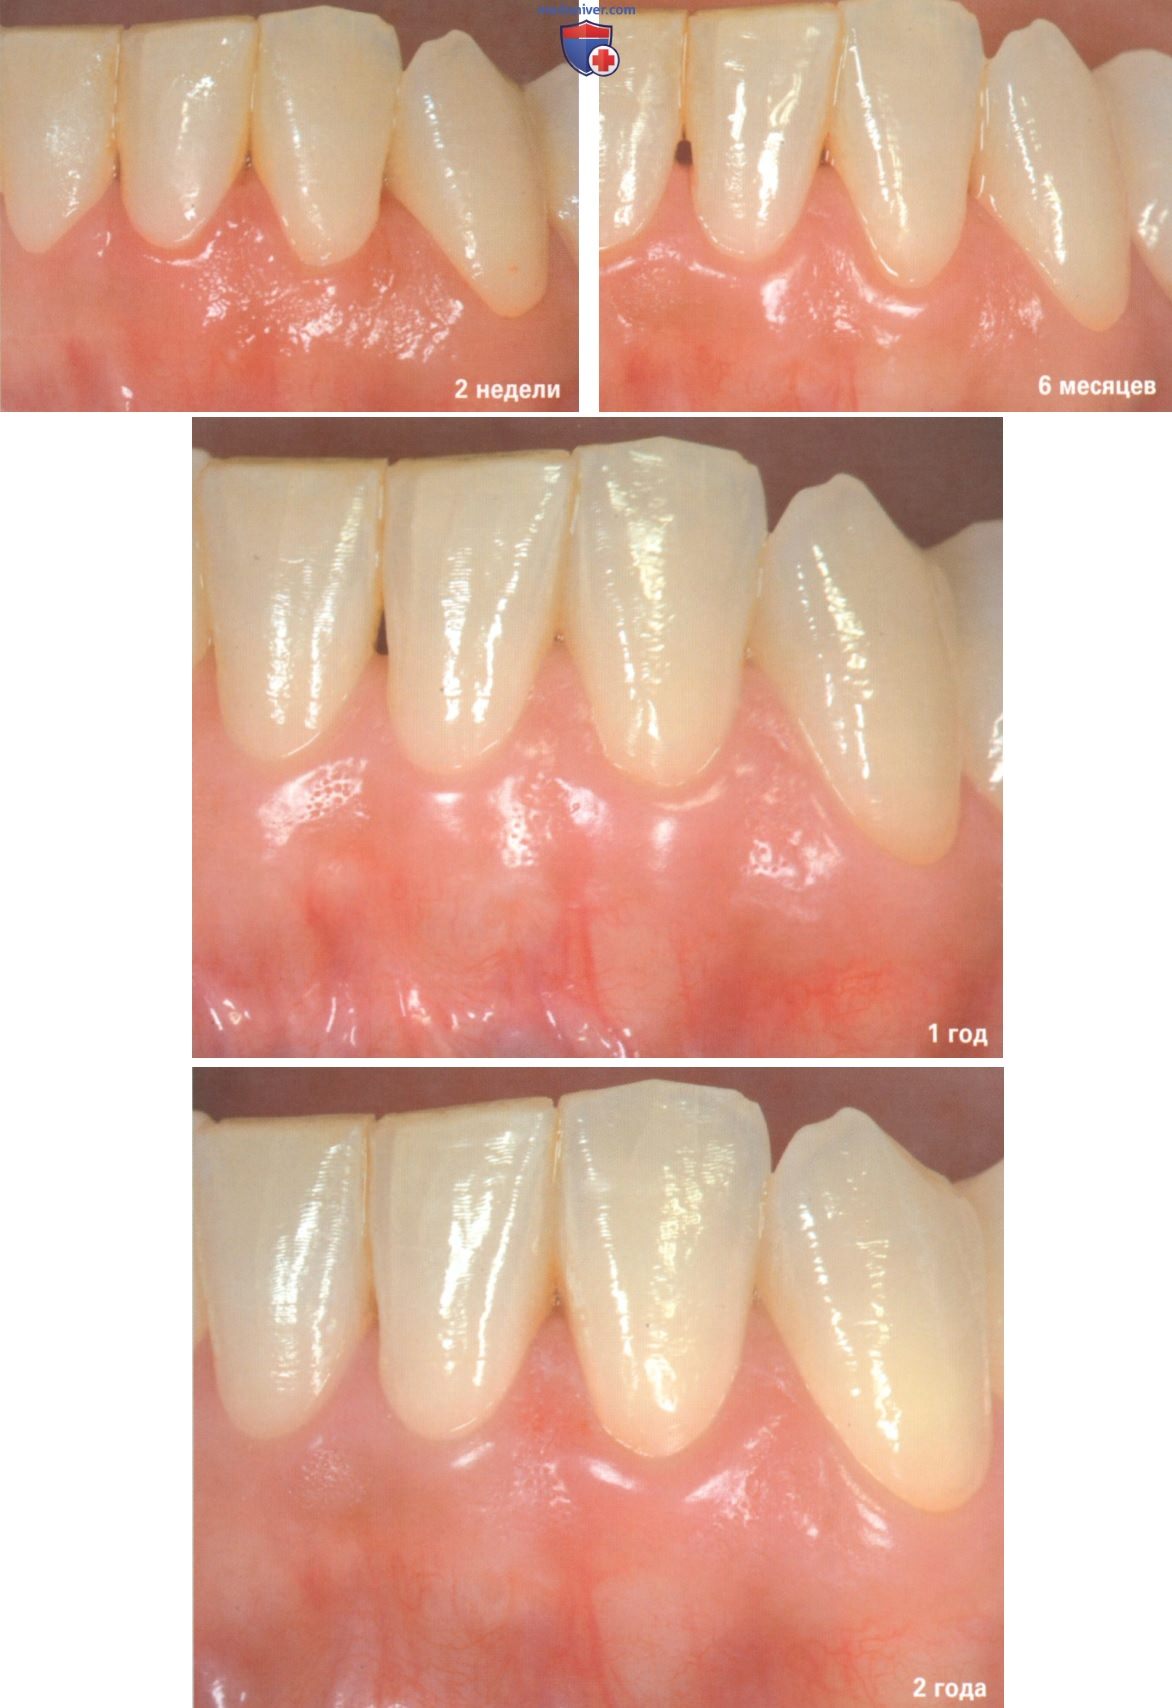 Операция при рецессии десны из-за пришеечного кариеса зуба корональнее уровня максимального закрытия корня (МЗК)